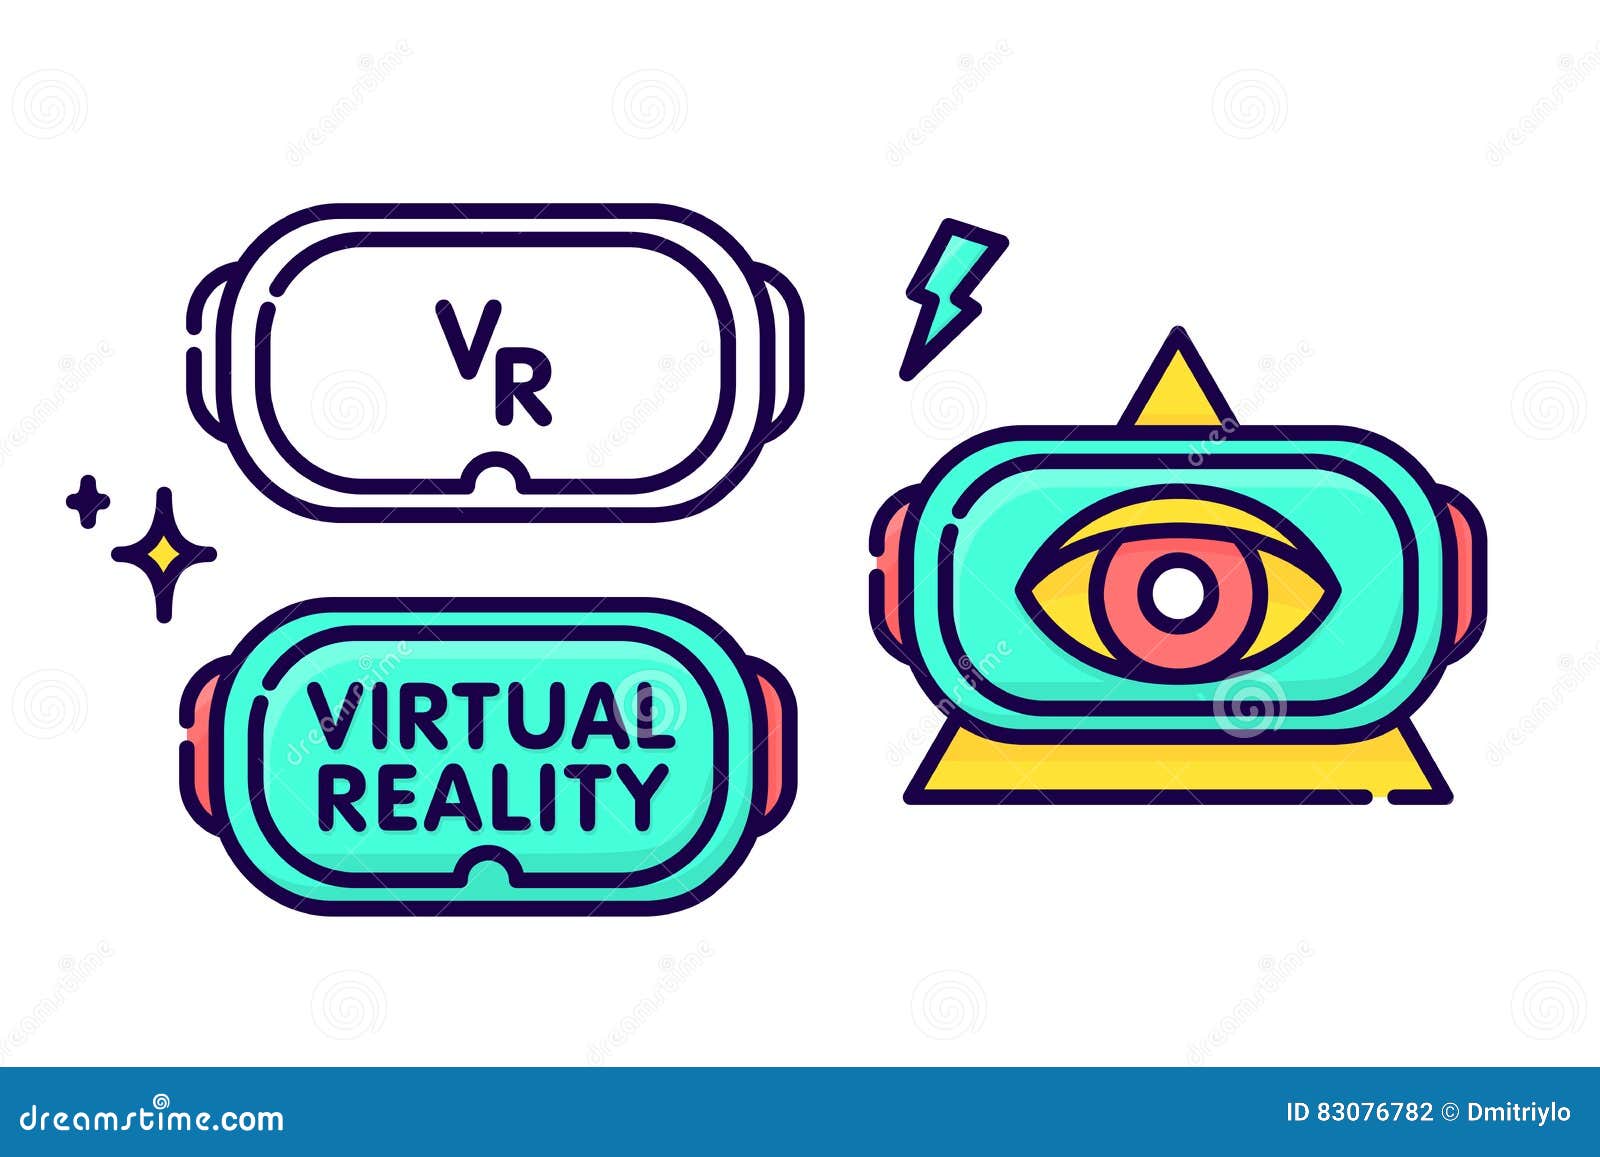 VR вектор логотип